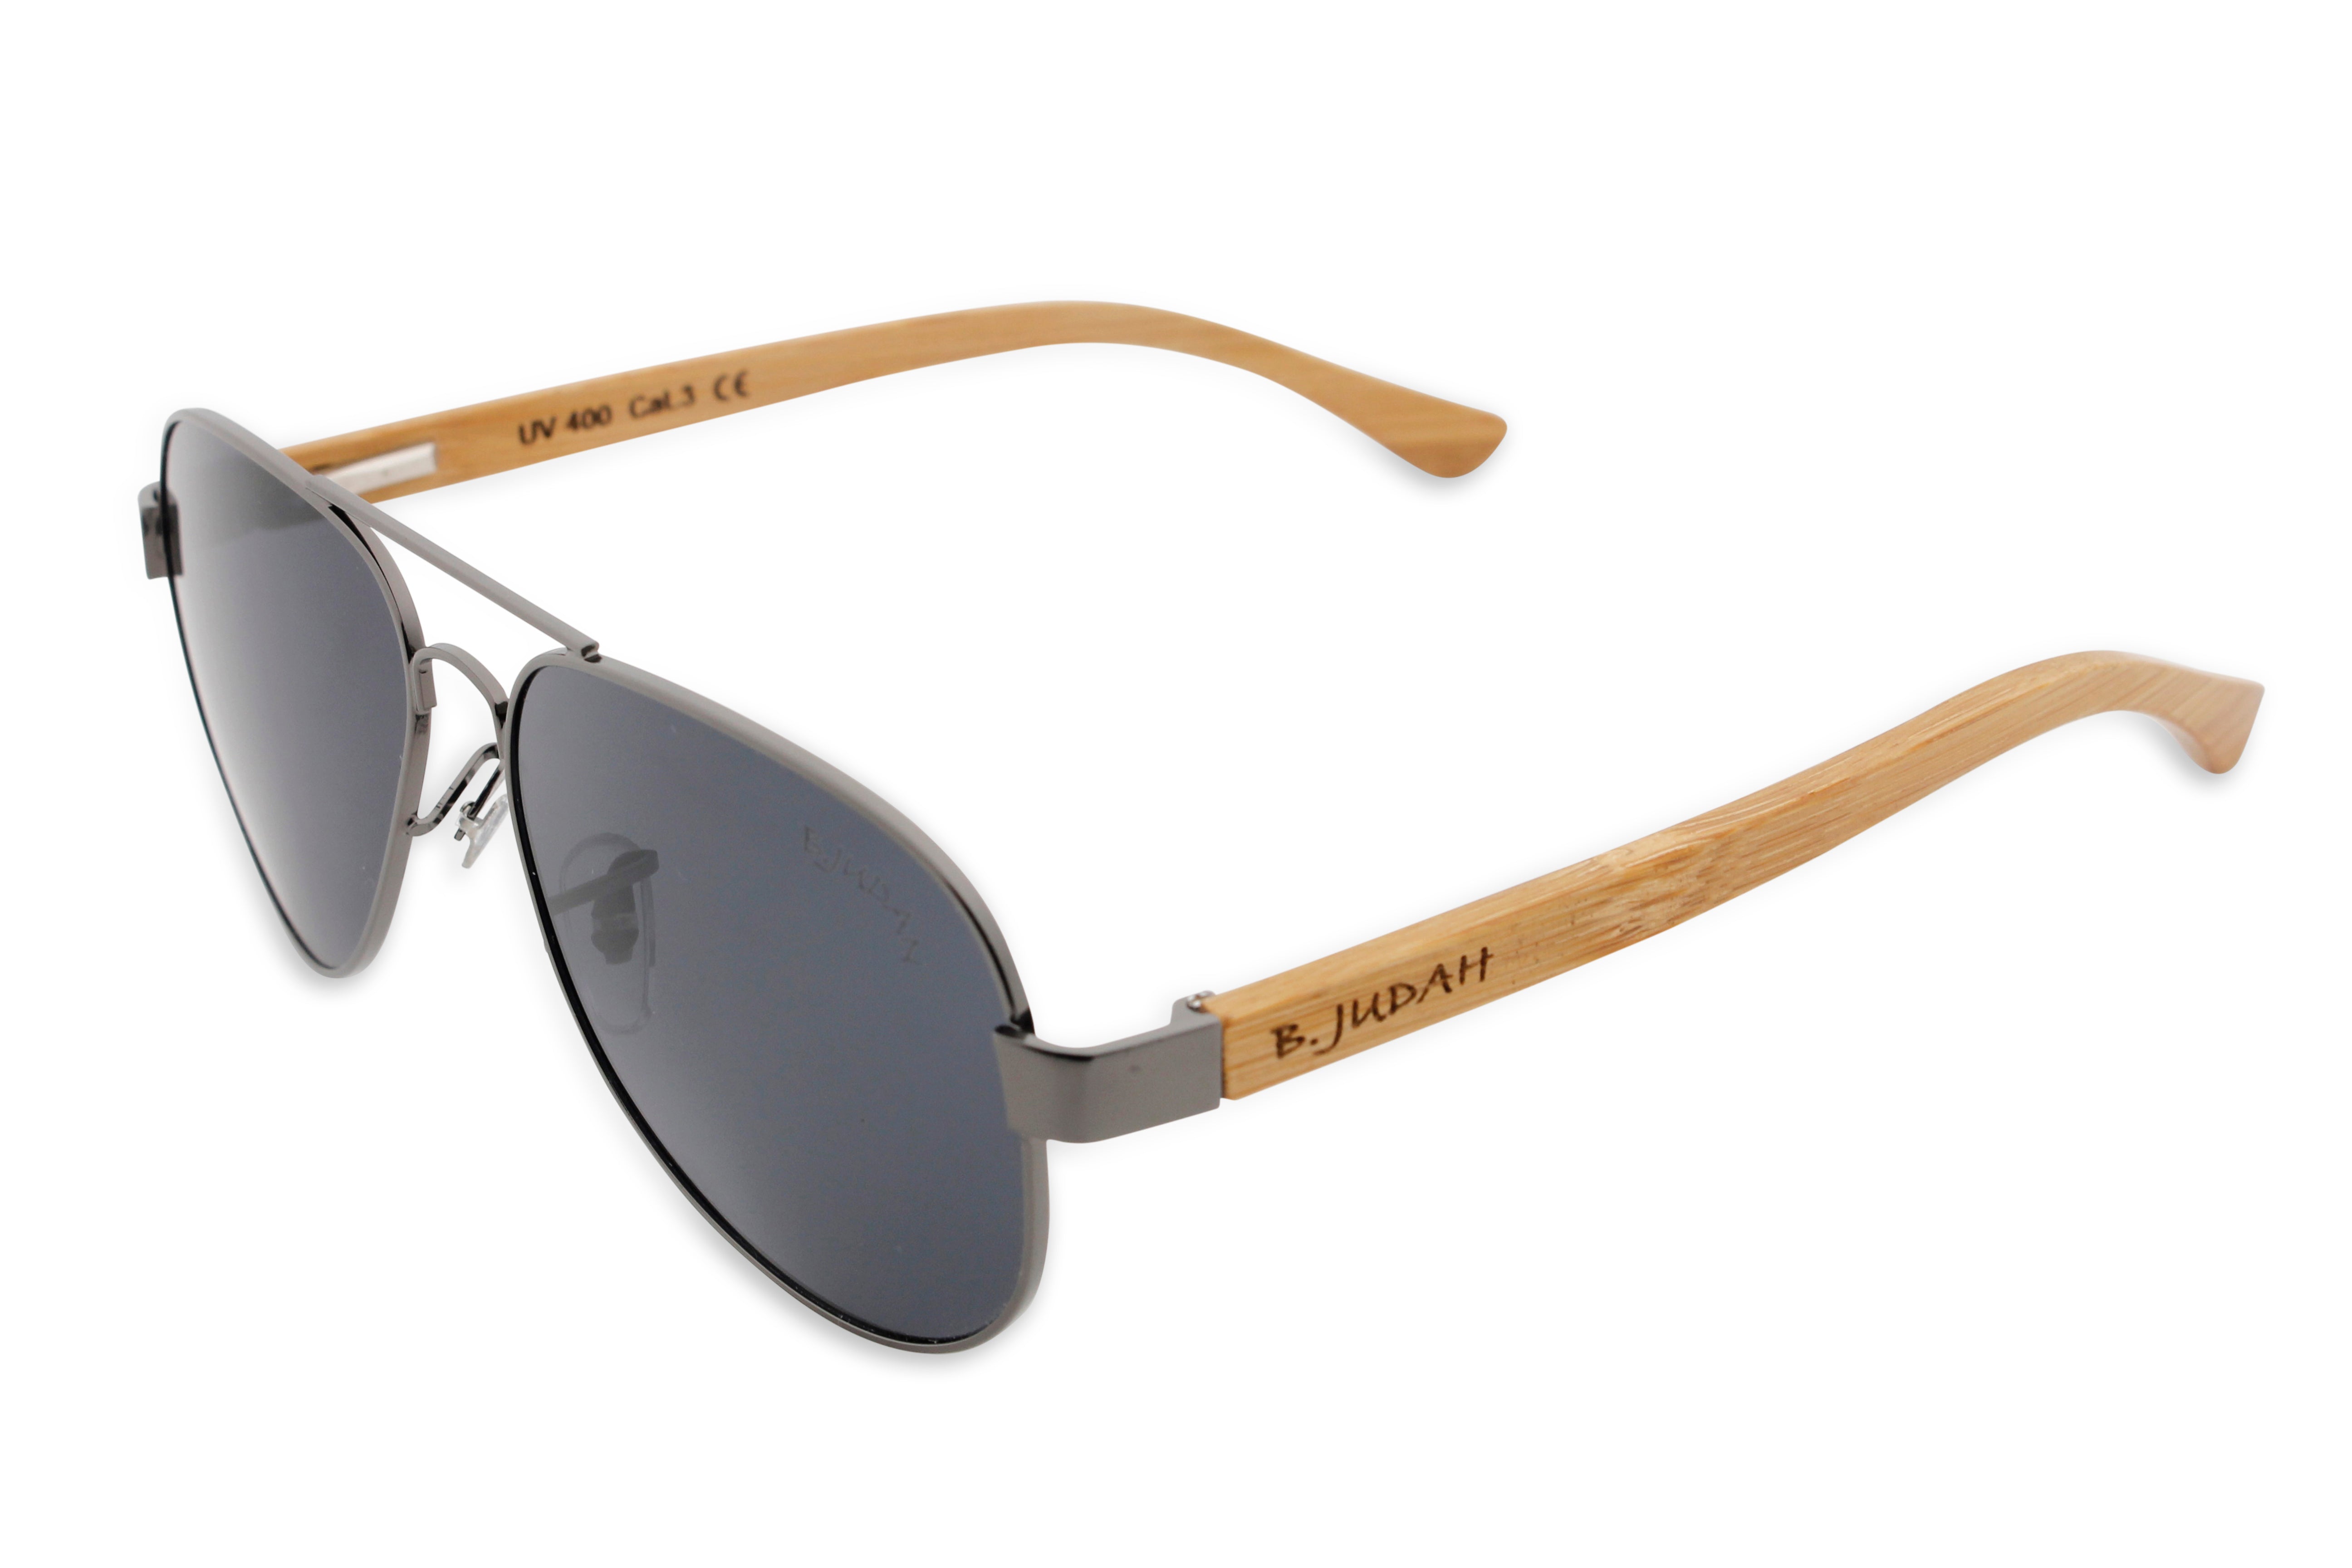 B. Judah Sunglasses - Hawk Series